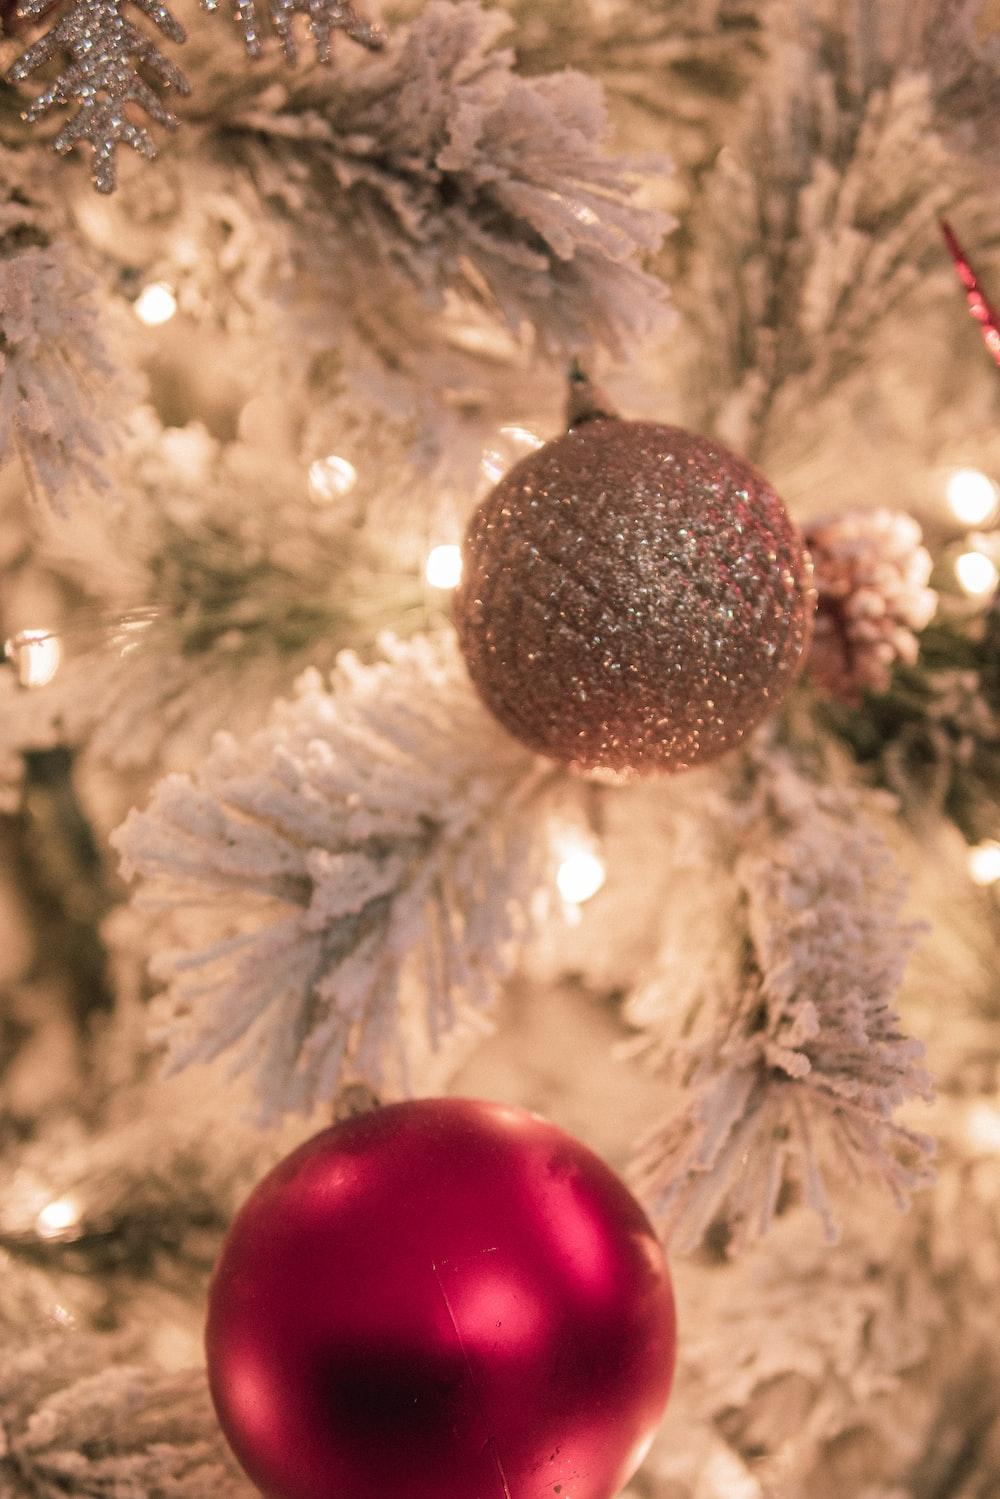 Christmas Tree Image